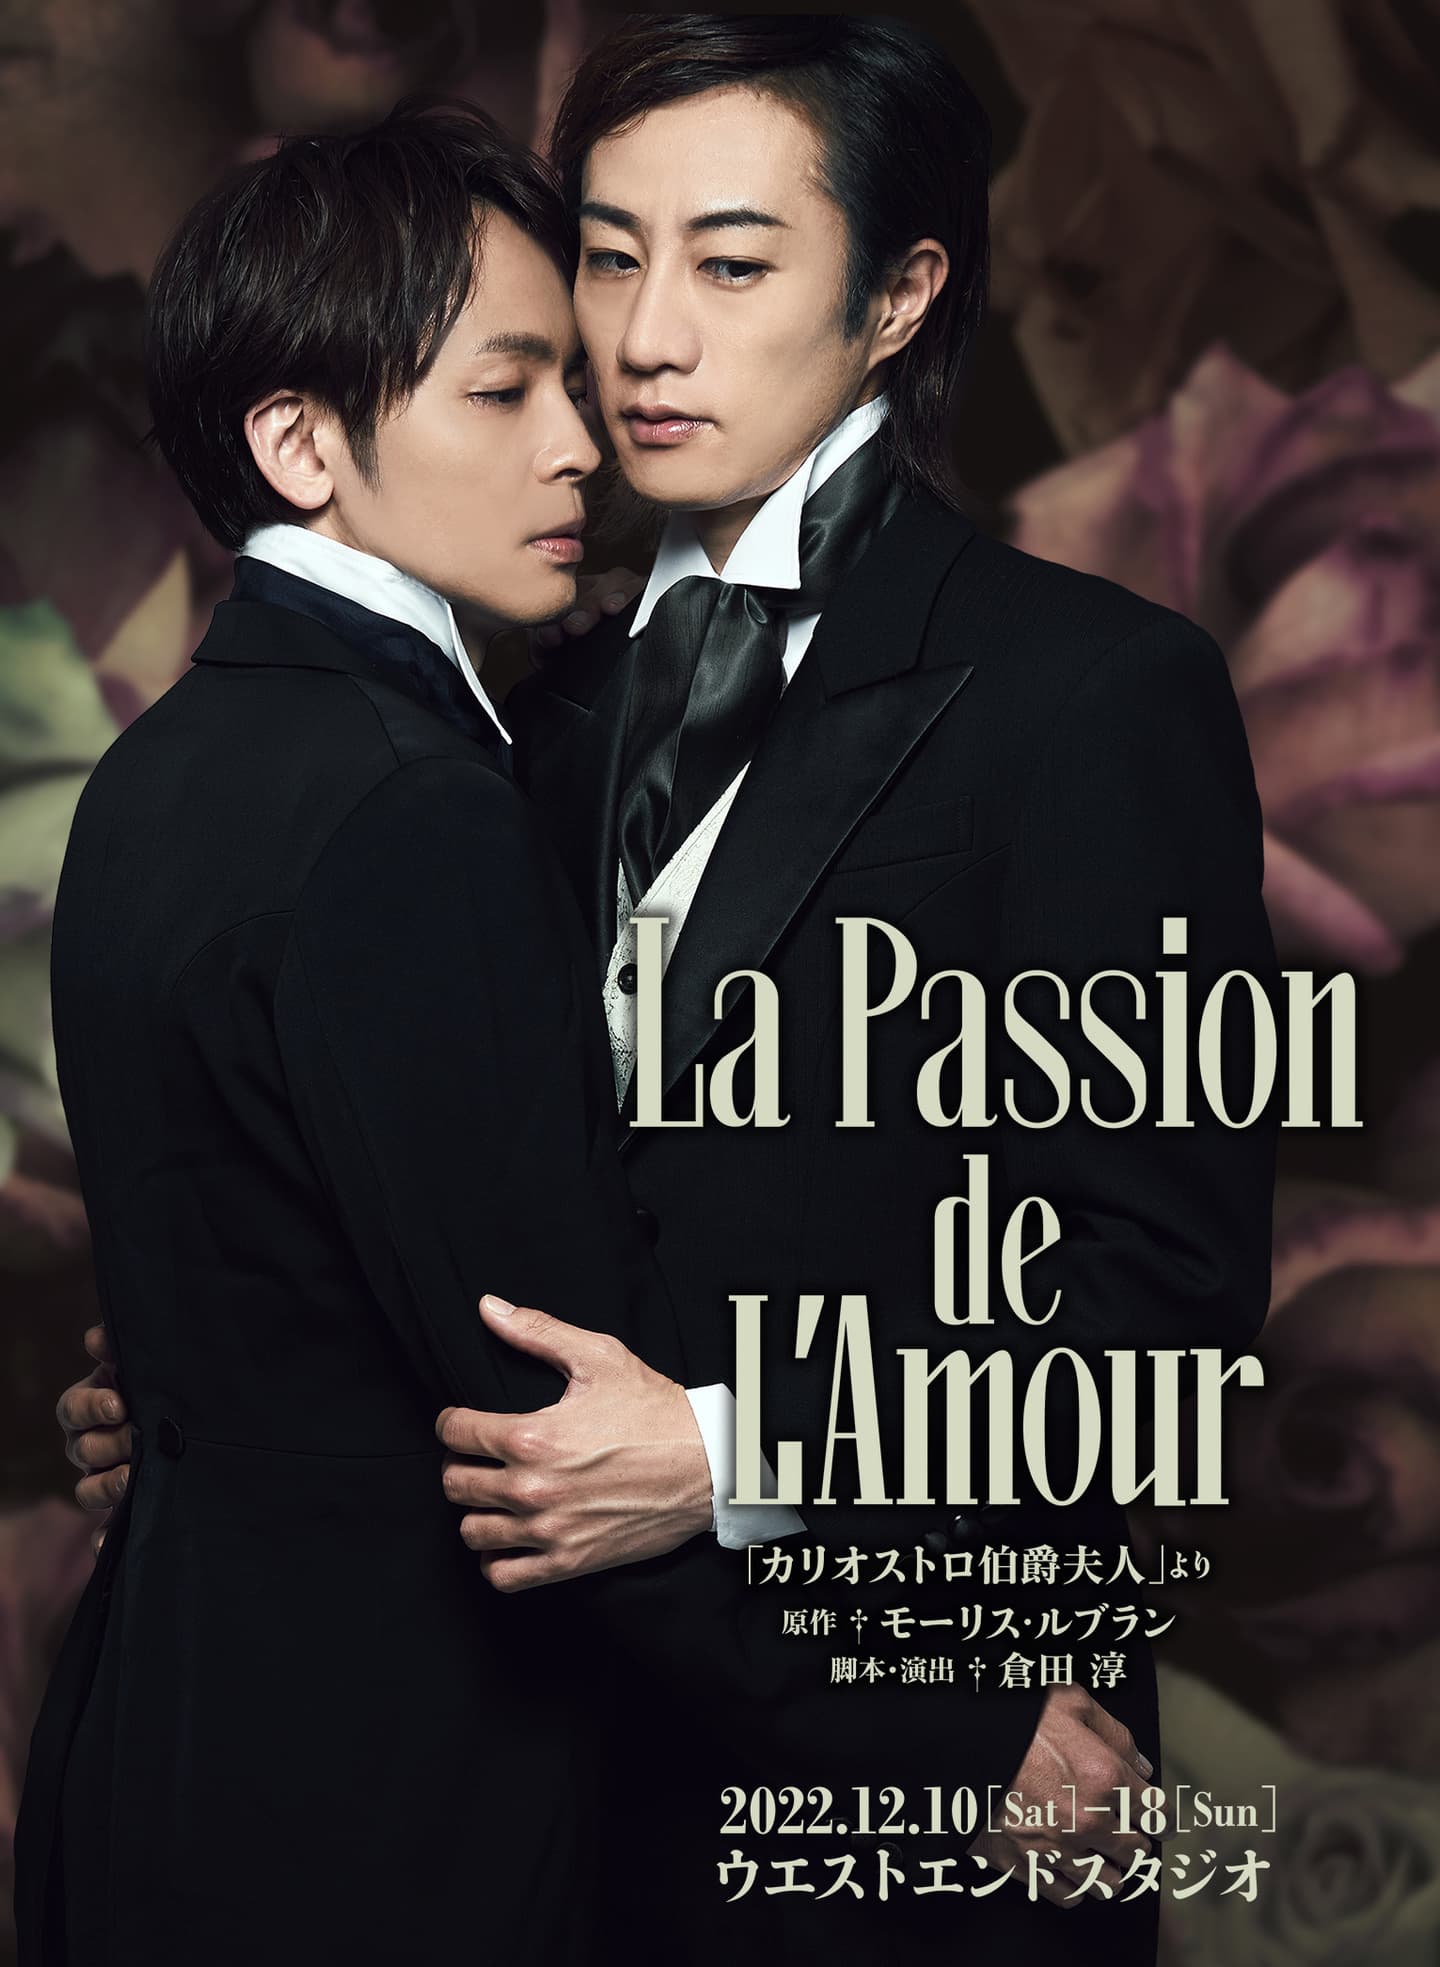 スタジオライフ公演『La Passion de L'Amour』-「カリオストロ伯爵夫人 